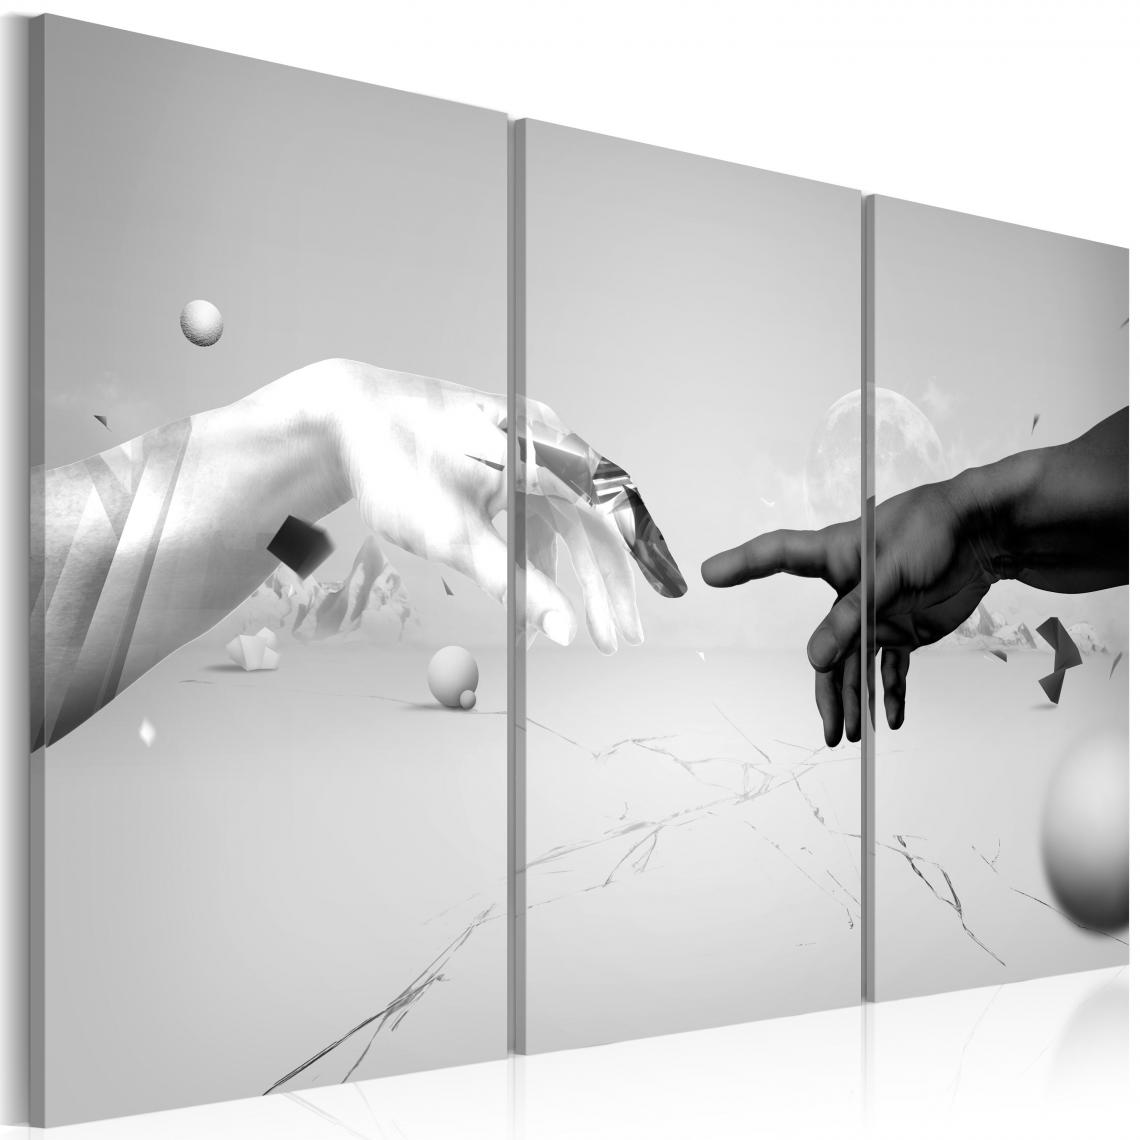 Decoshop26 - Tableau sur toile en 3 panneaux décoration murale image imprimée cadre en bois à suspendre Toucher en noir et blanc 60x40 cm 11_0002096 - Tableaux, peintures